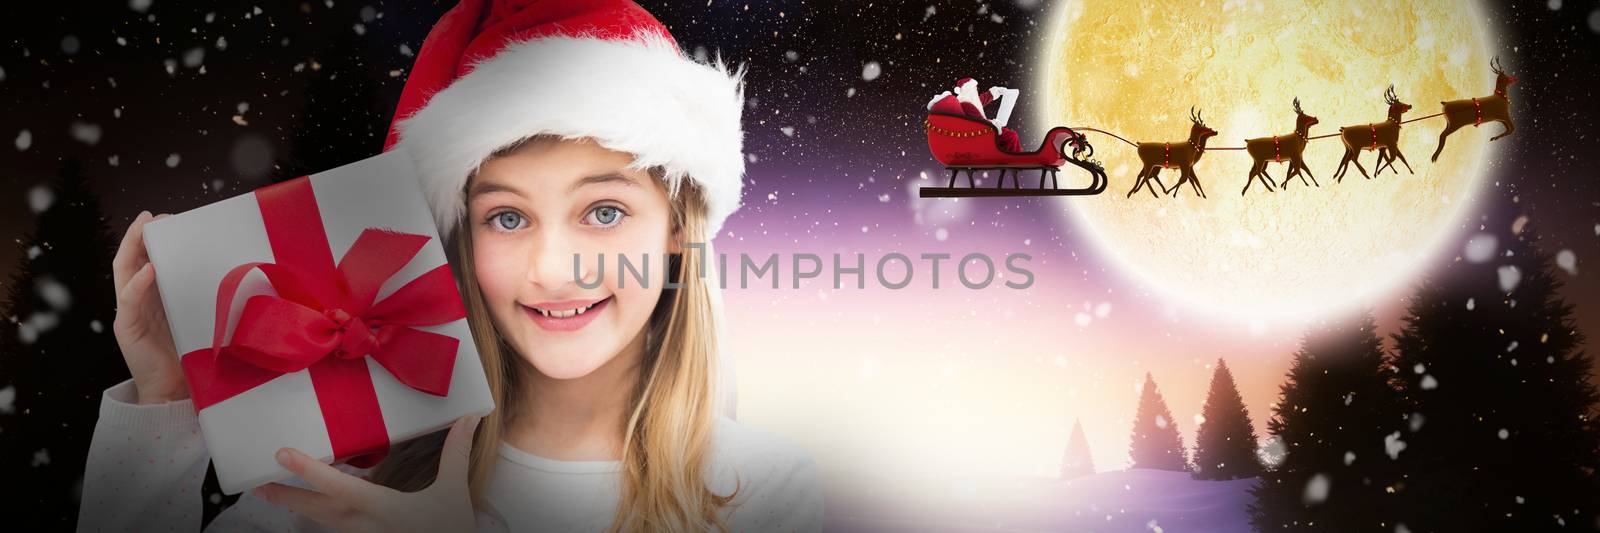 Portrait of smiling girl holding Christmas gift against white background against full moon over snowy landscape